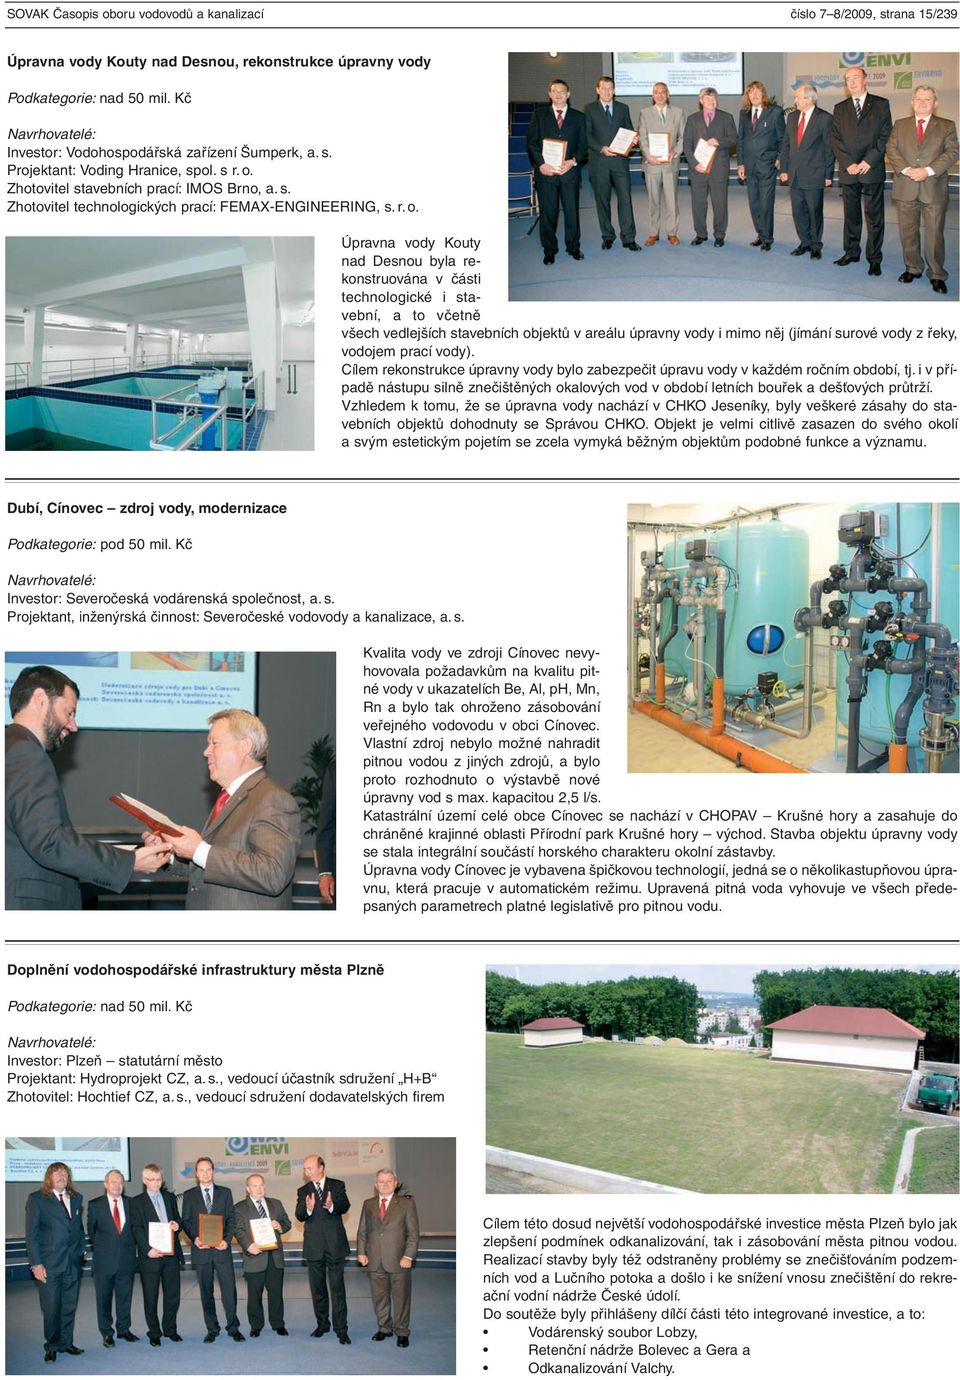 Zhotovitel stavebních prací: IMOS Brno, a. s. Zhotovitel technologických prací: FEMAX-ENGINEERING, s. r. o.